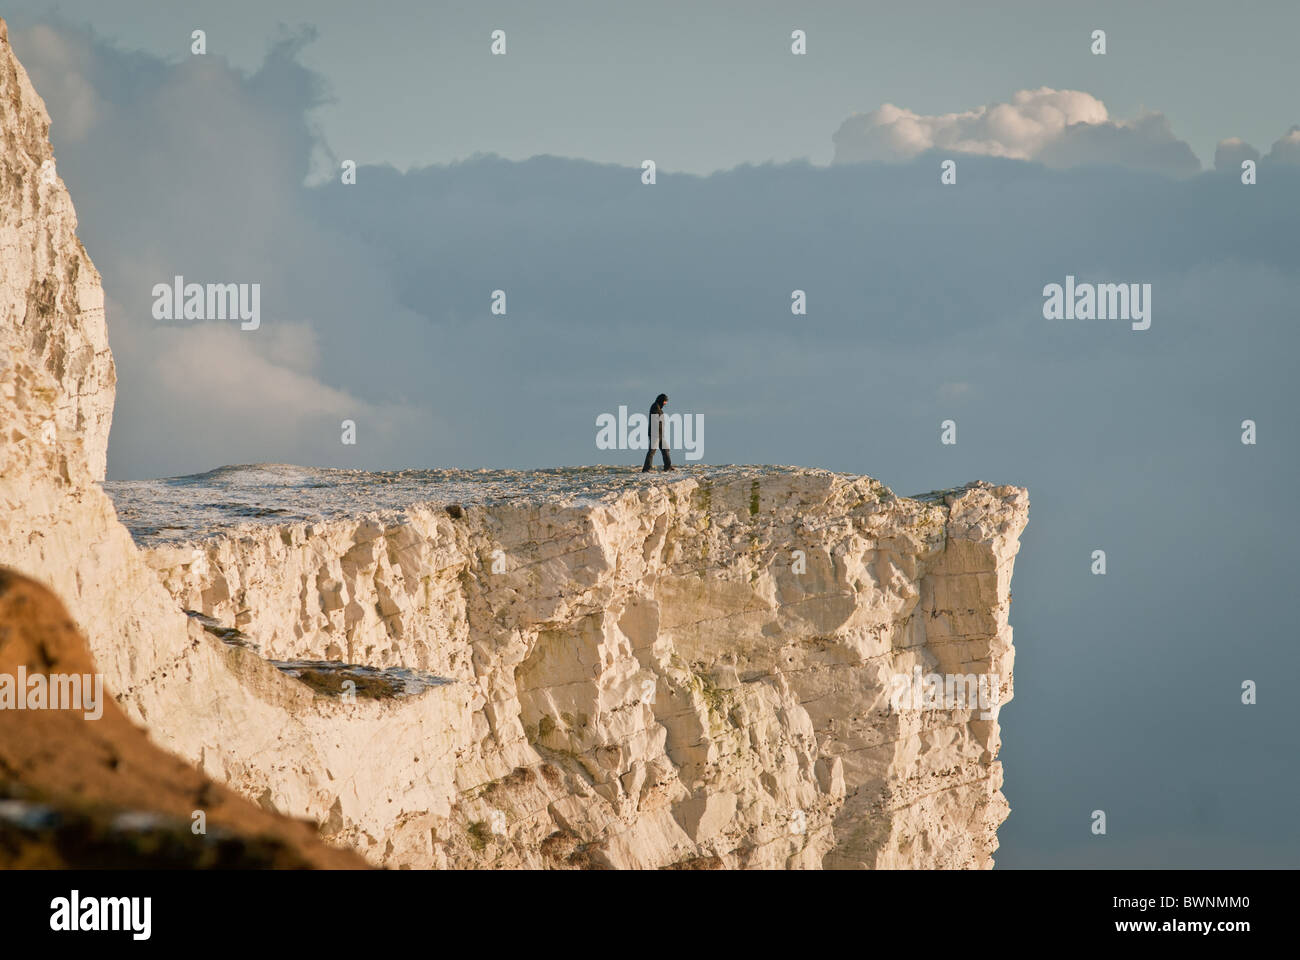 Man walkni9g to cliff edge Stock Photo